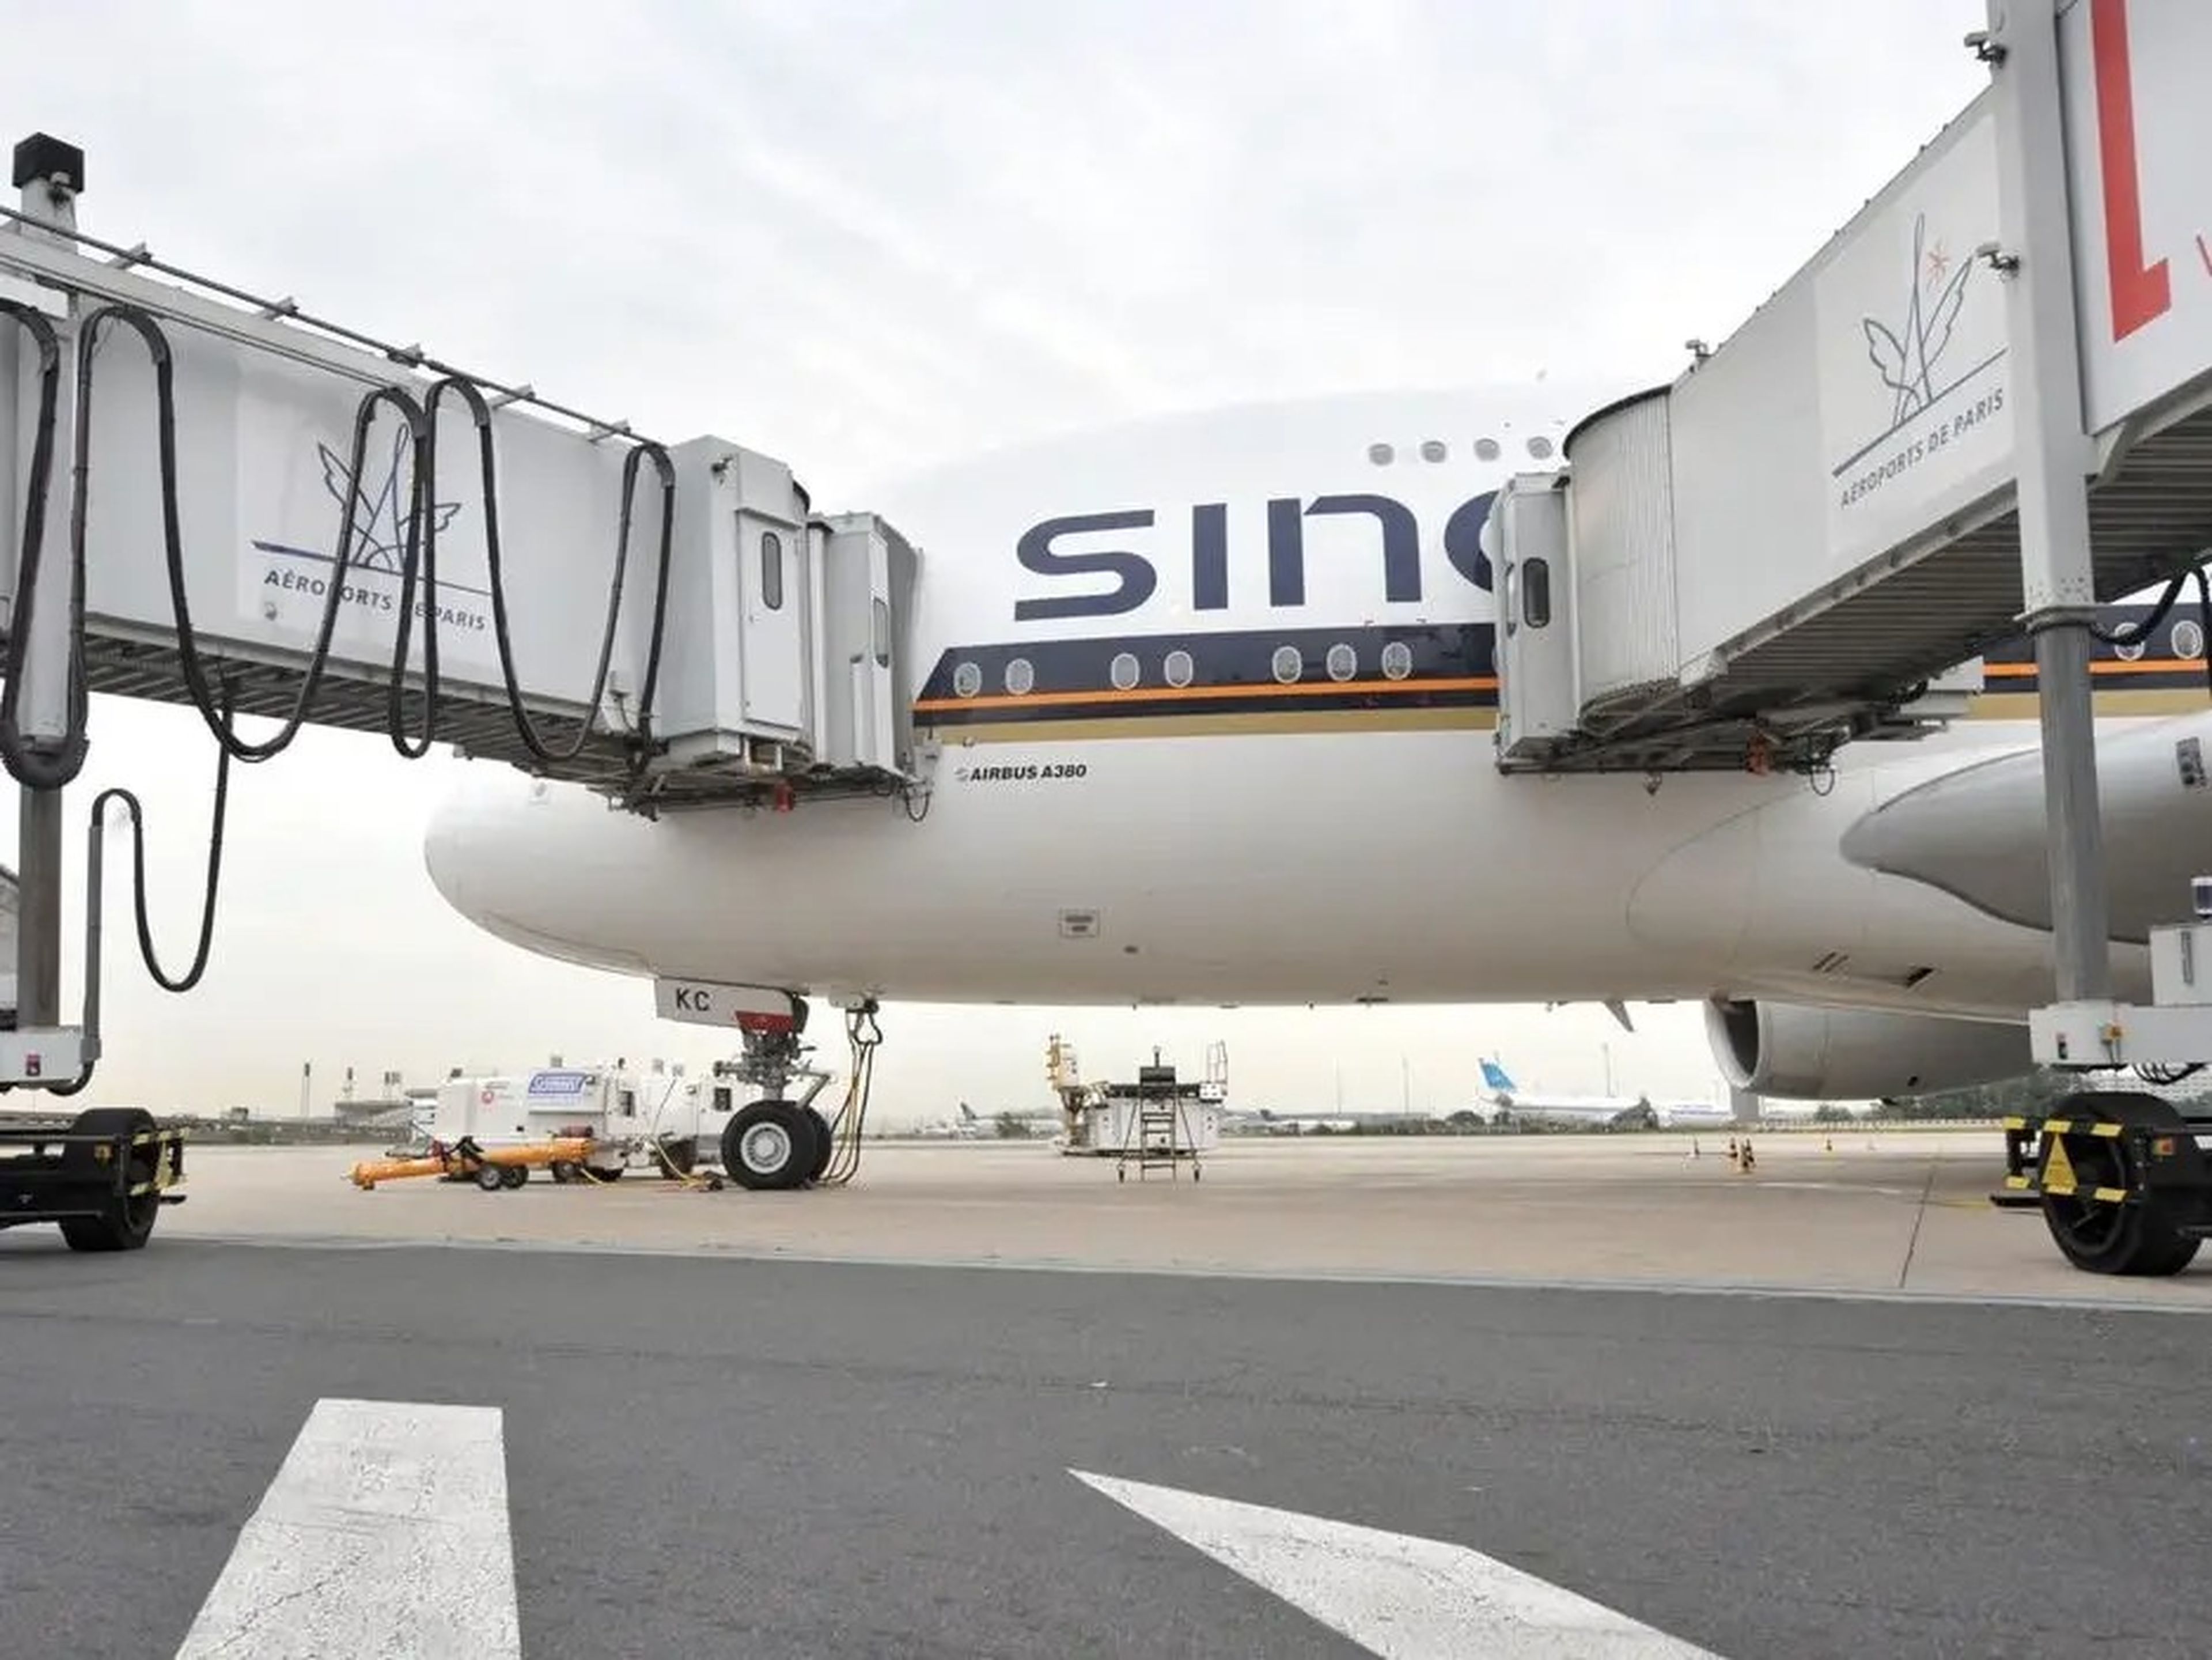 Un A380 de Singapore Airlines es embarcado a través de los dos puentes inferiores del aeropuerto CDG de París.